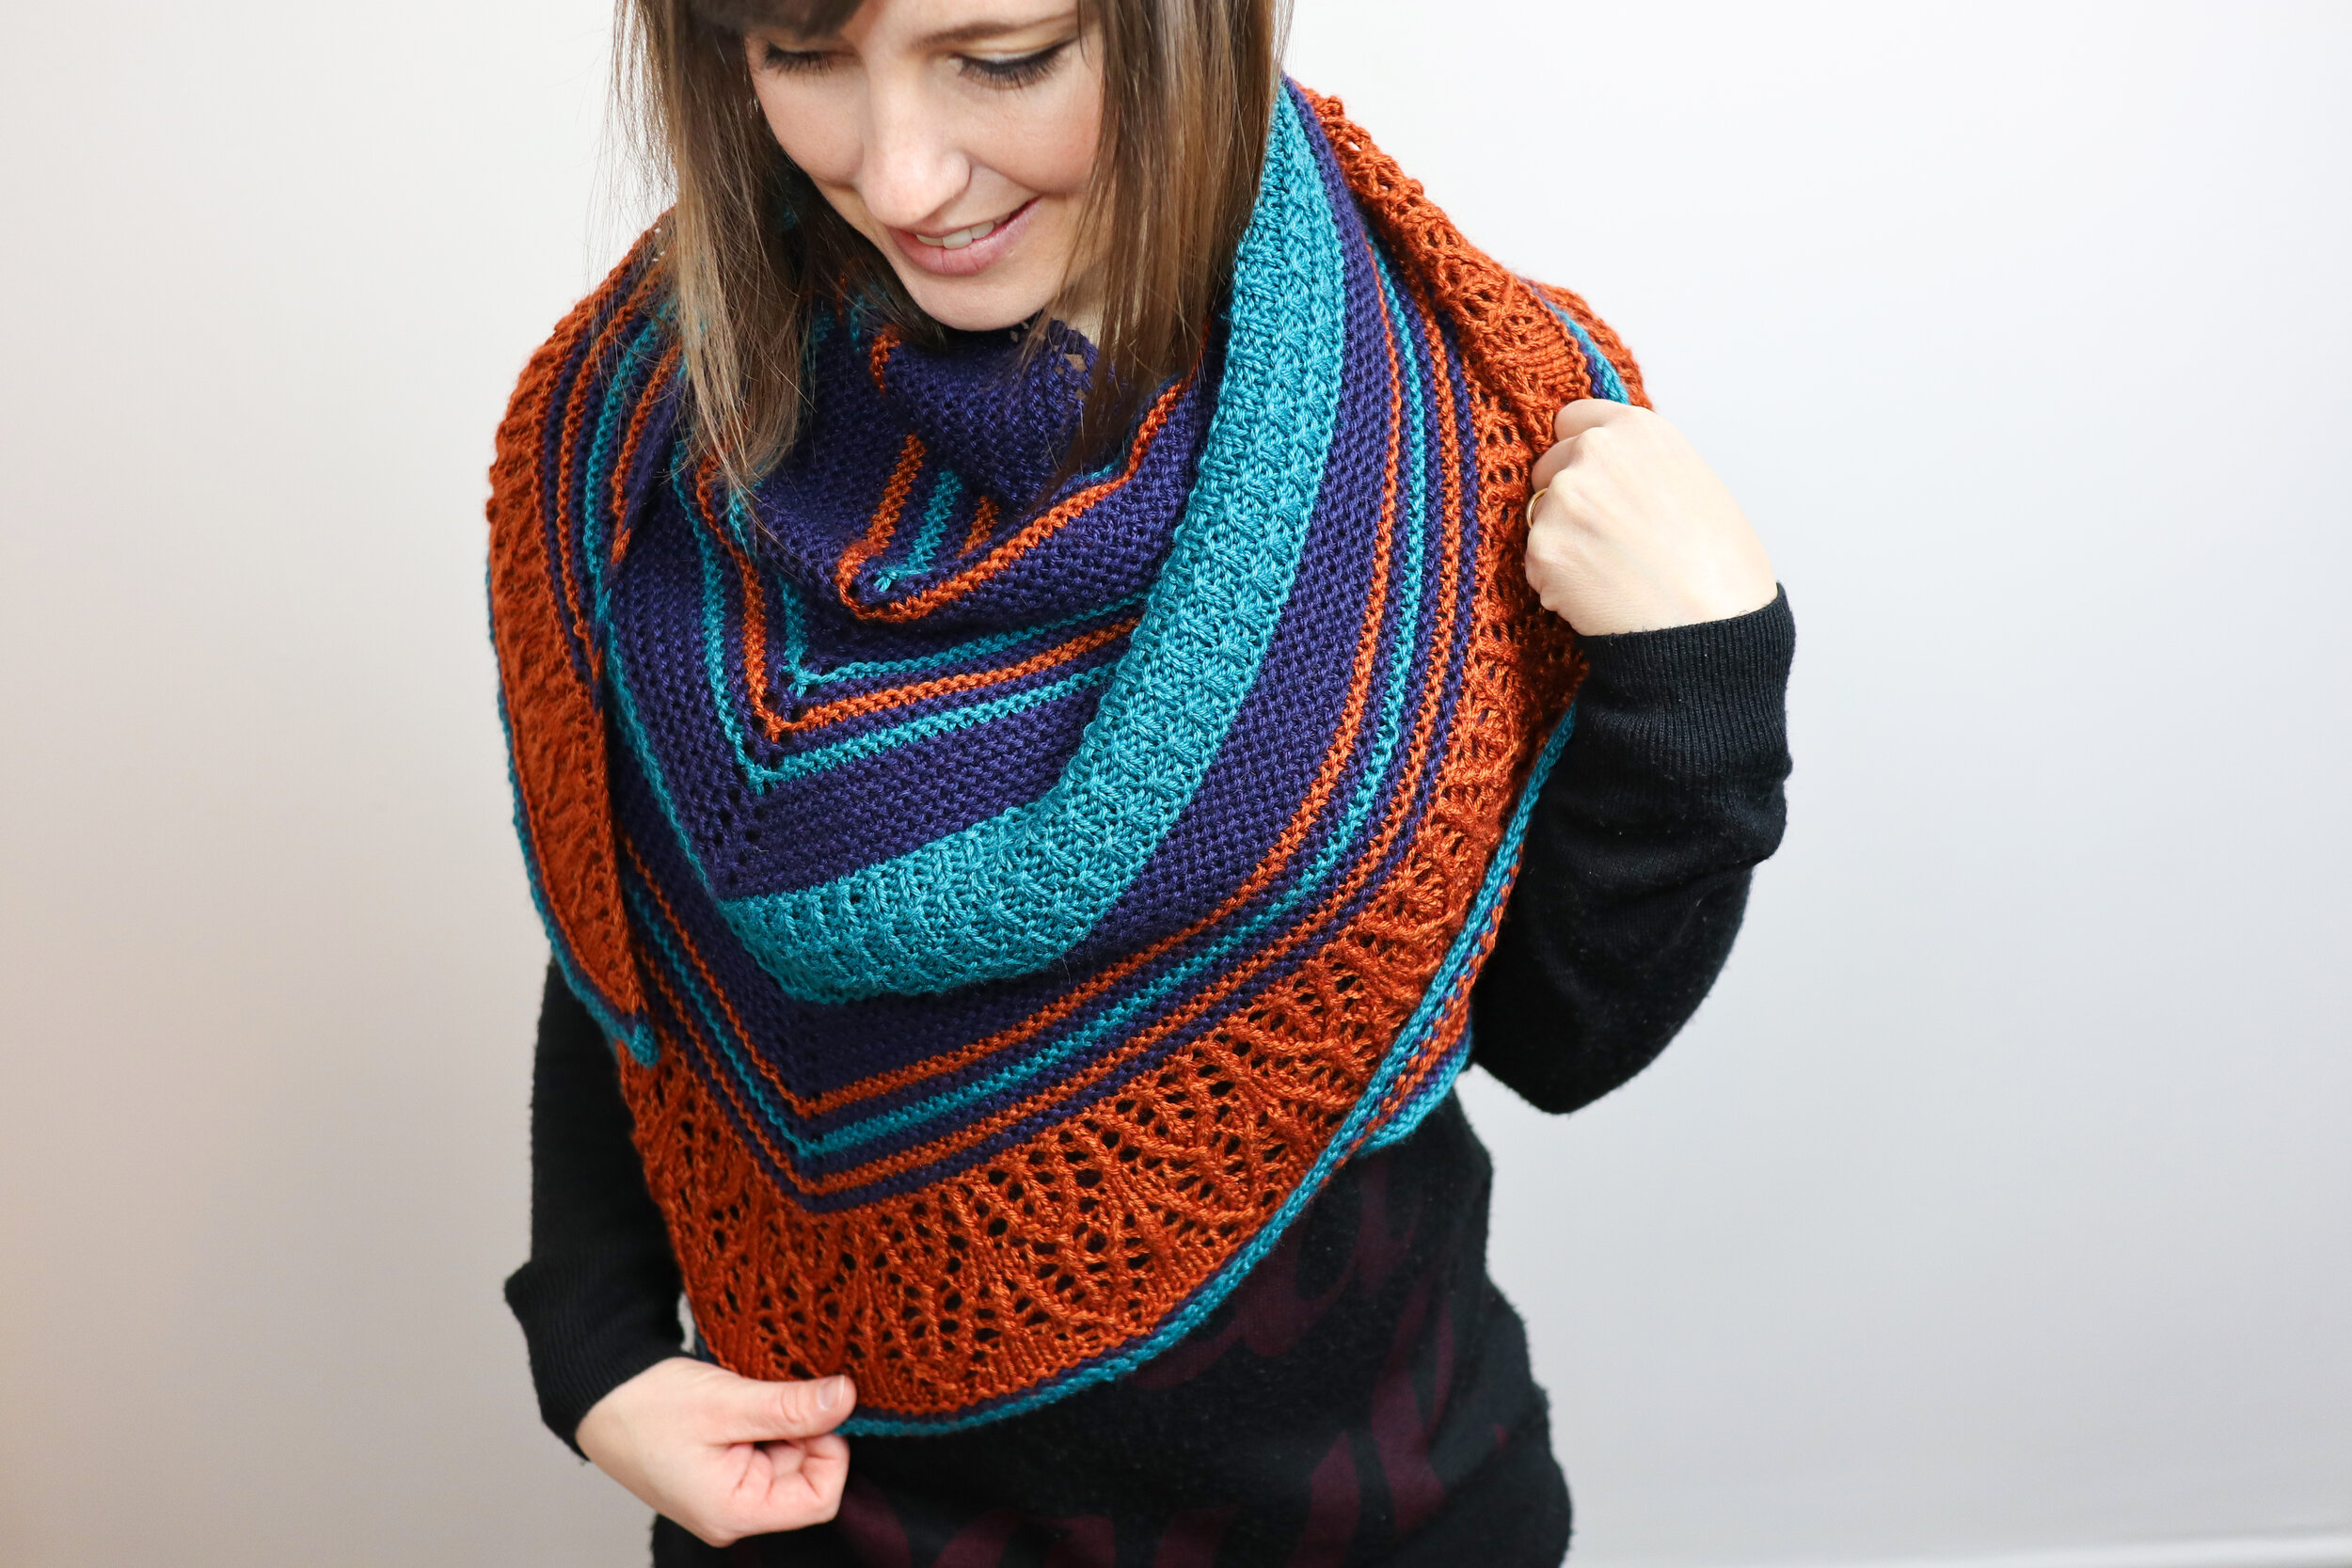 60" x 36" Knitting Pattern Lady's Soft Shawl/Wrap DK Yarn. 